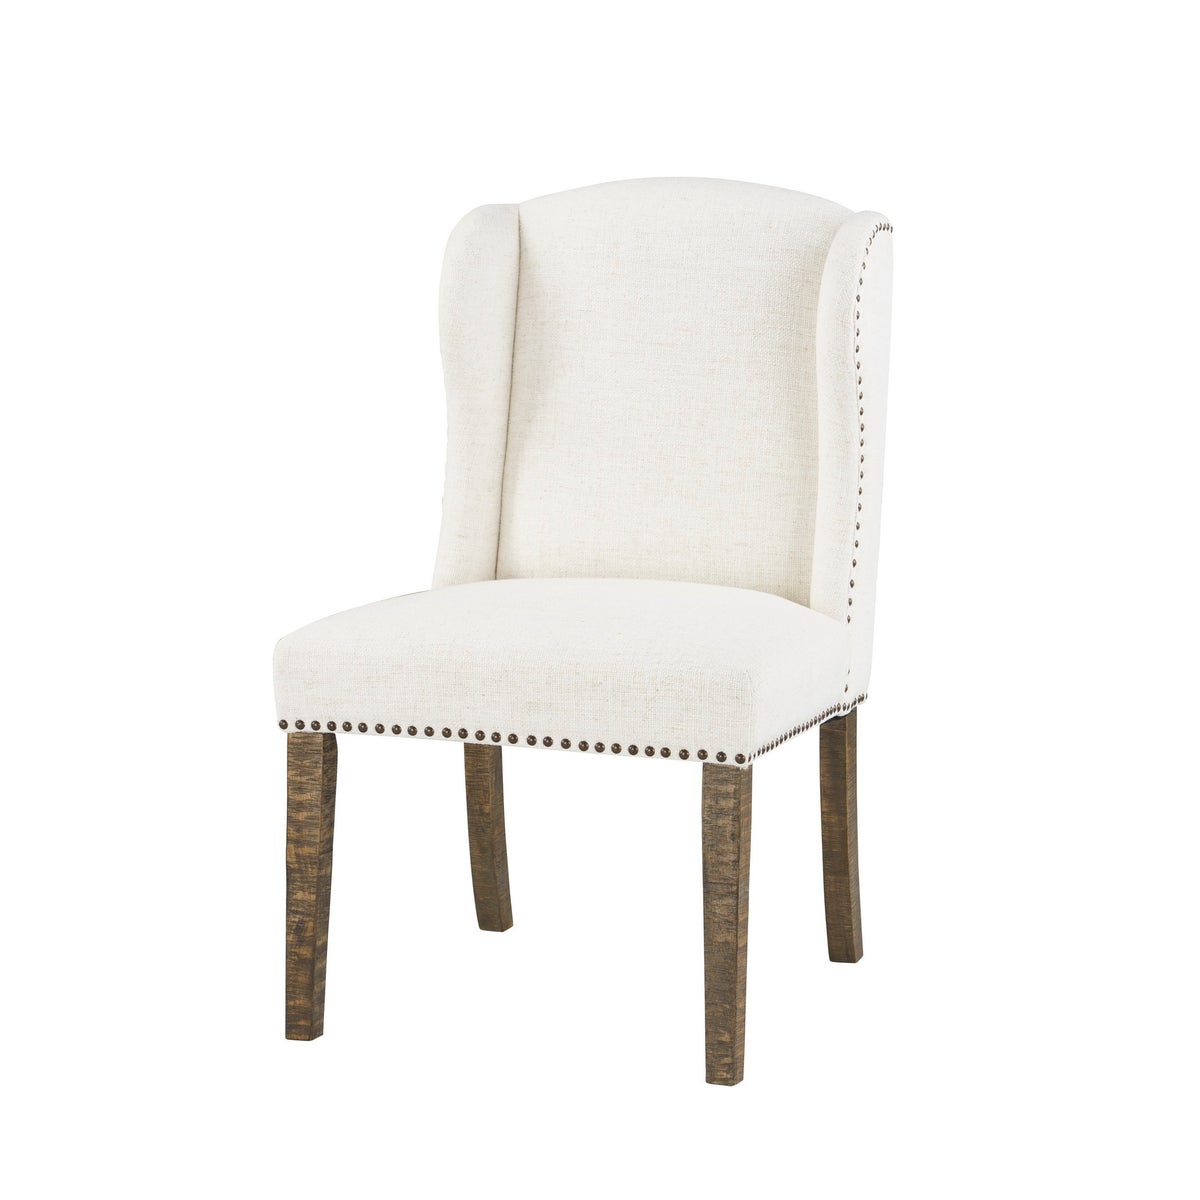 -Savannah Dining Chair (Cotton Boll)